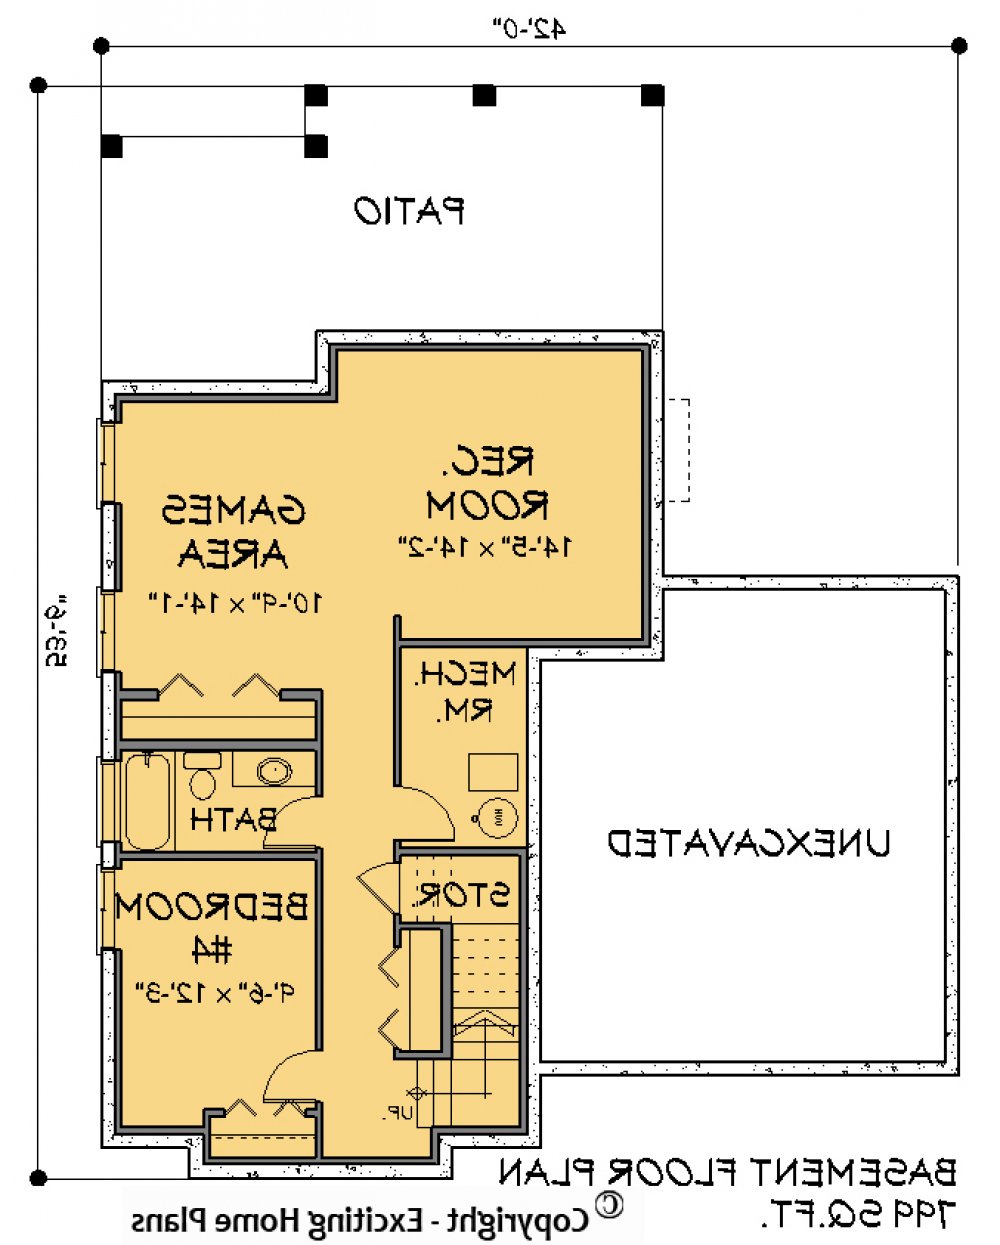 House Plan E1307-10 Lower Floor Plan REVERSE